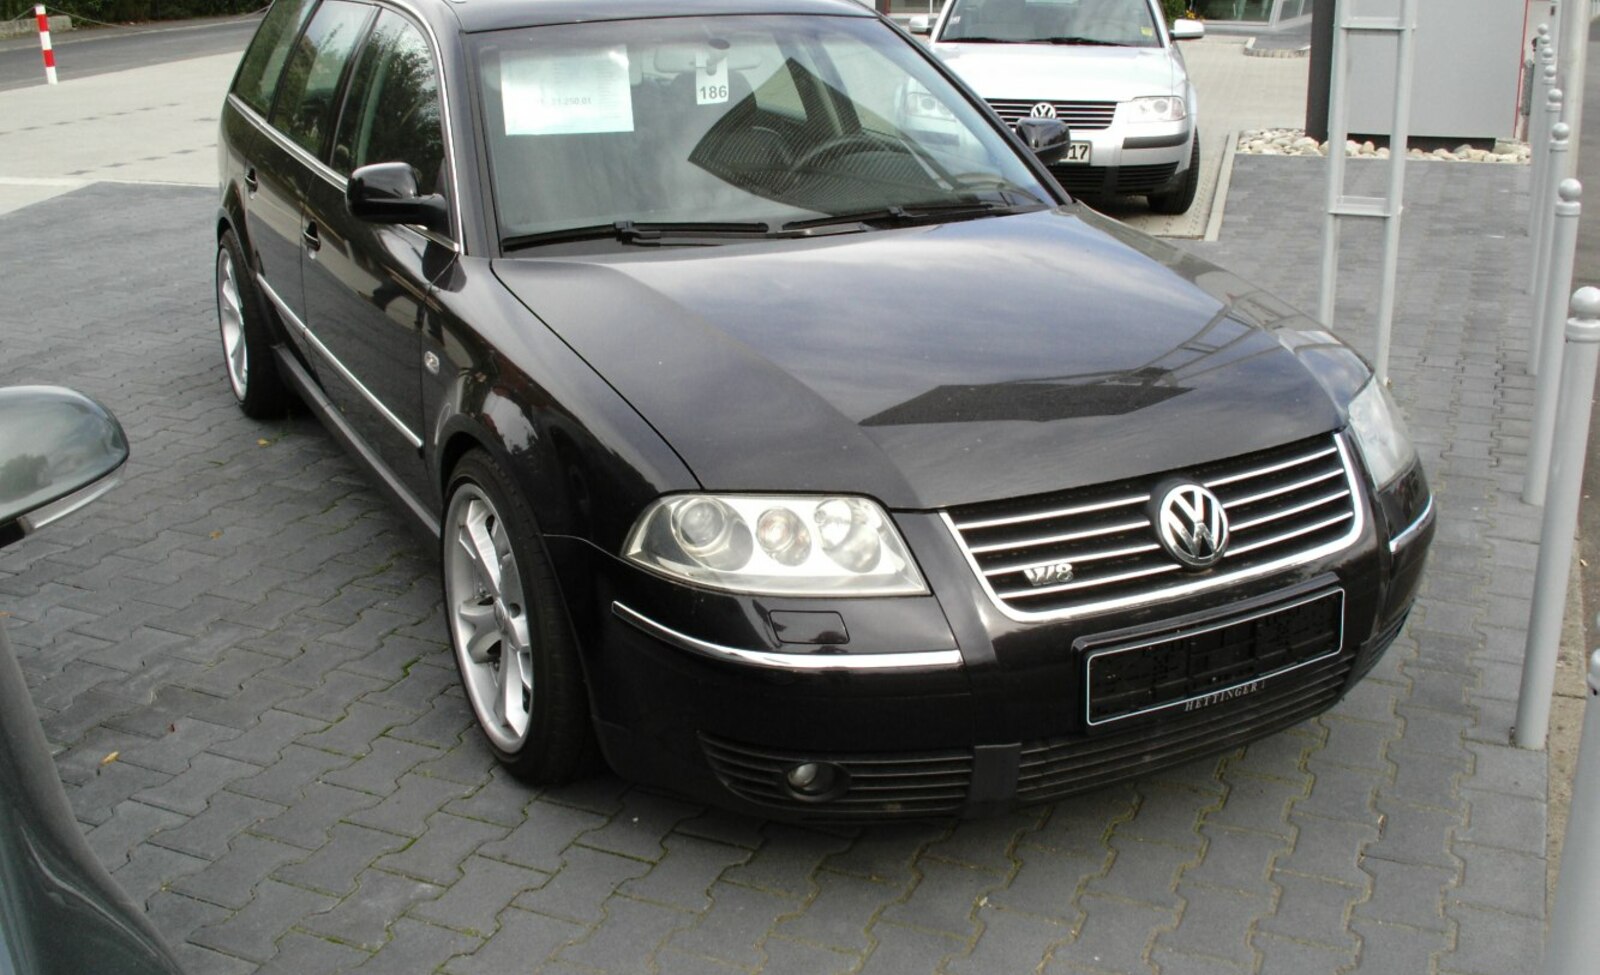 2000-2005 Volkswagen Passat Variant (B5.5) 1.8 Turbo 20V (150 Hp) Tiptronic